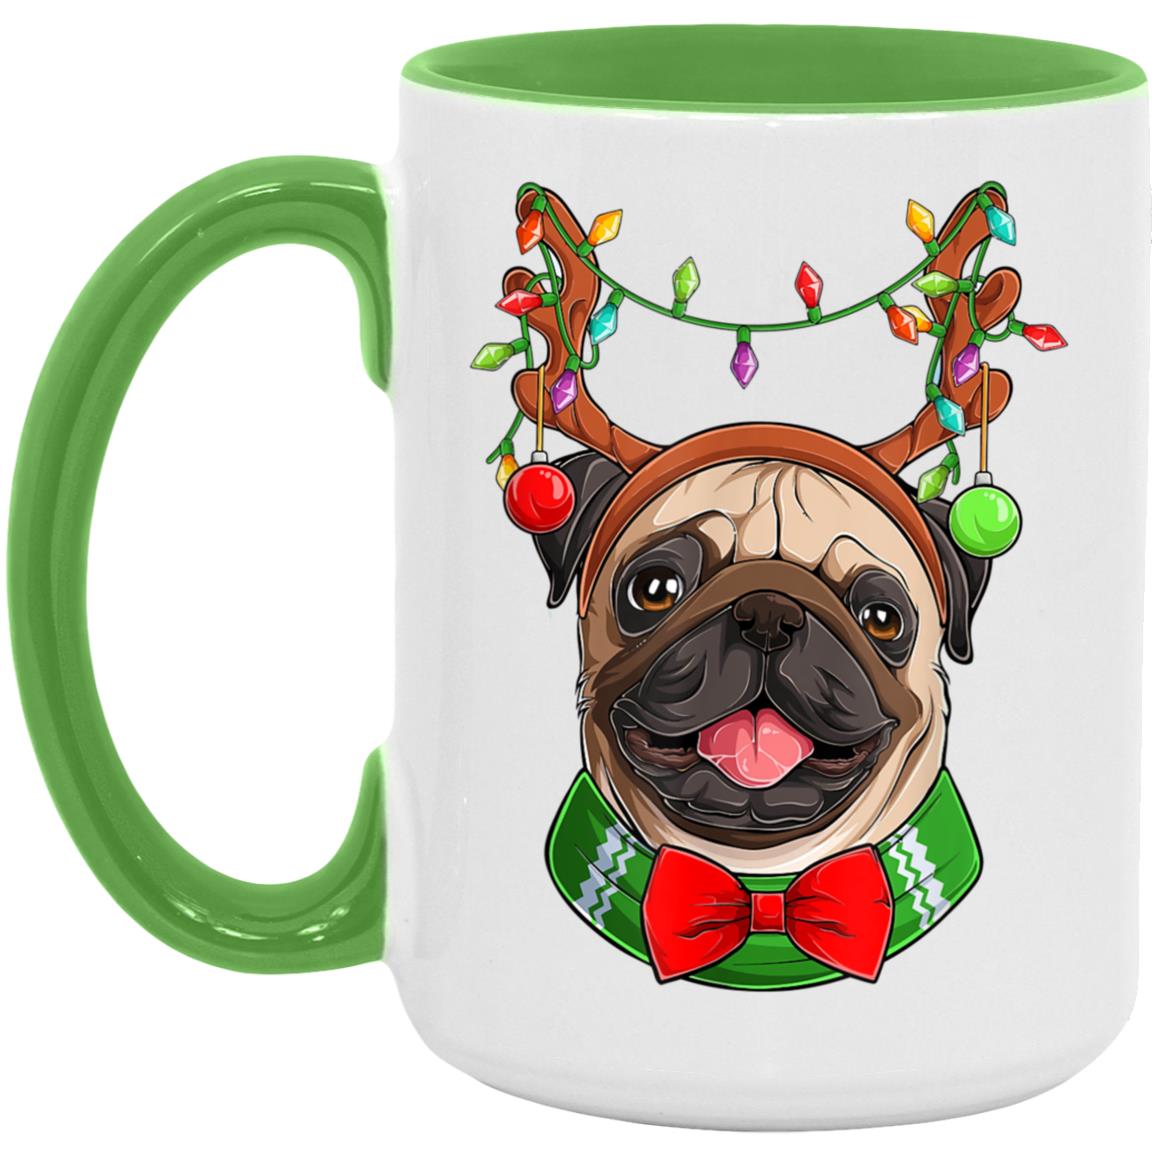 It's a Pug Mug Christmas - AM15OZ 15oz. Accent Mug